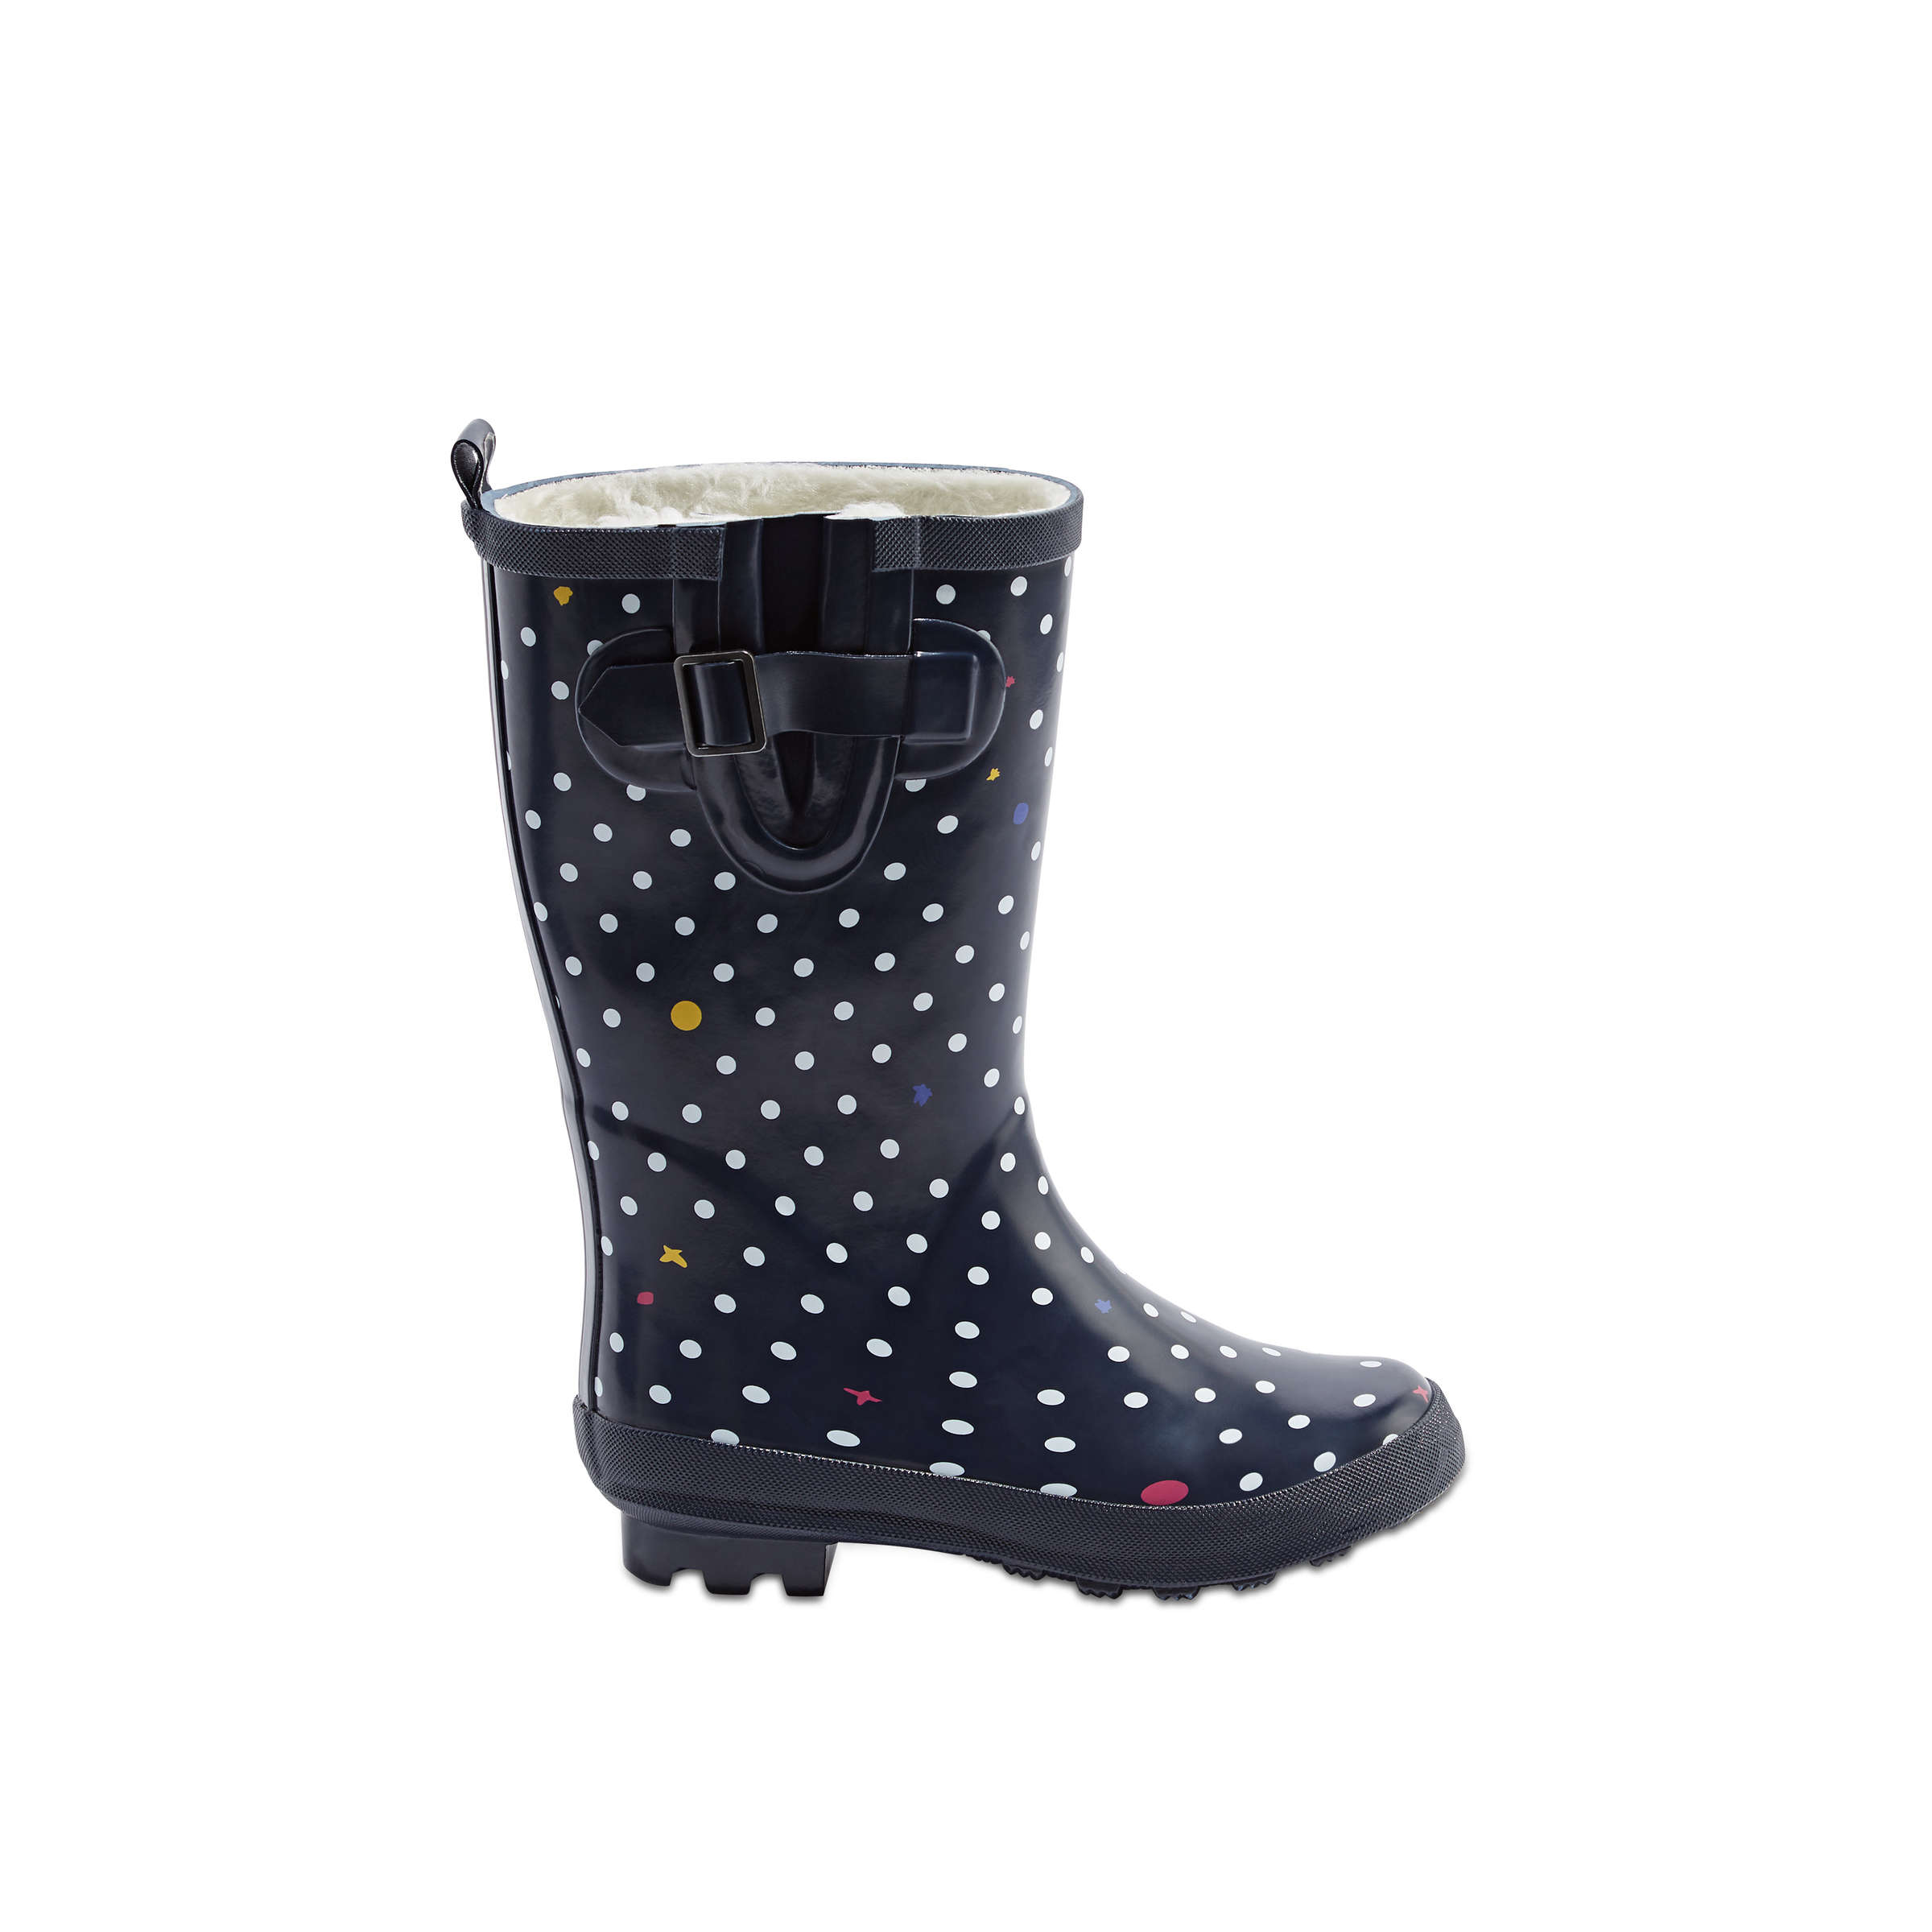 girls rain boots clearance